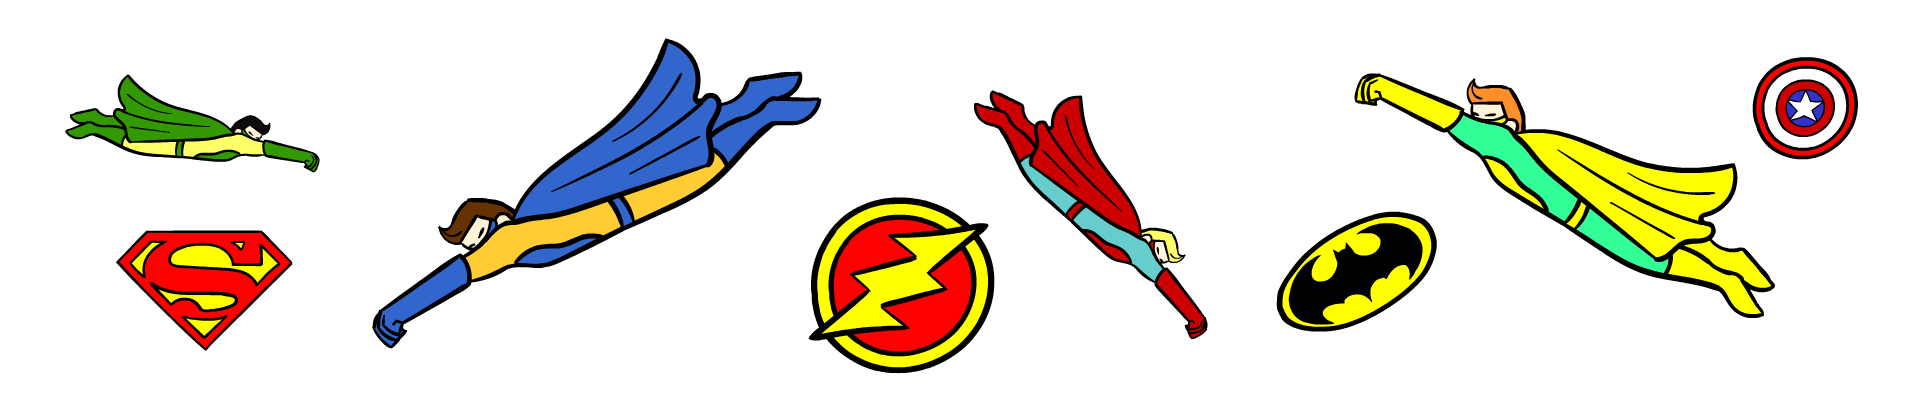 Illustrazione di vari supereroi con mantelli colorati che volano